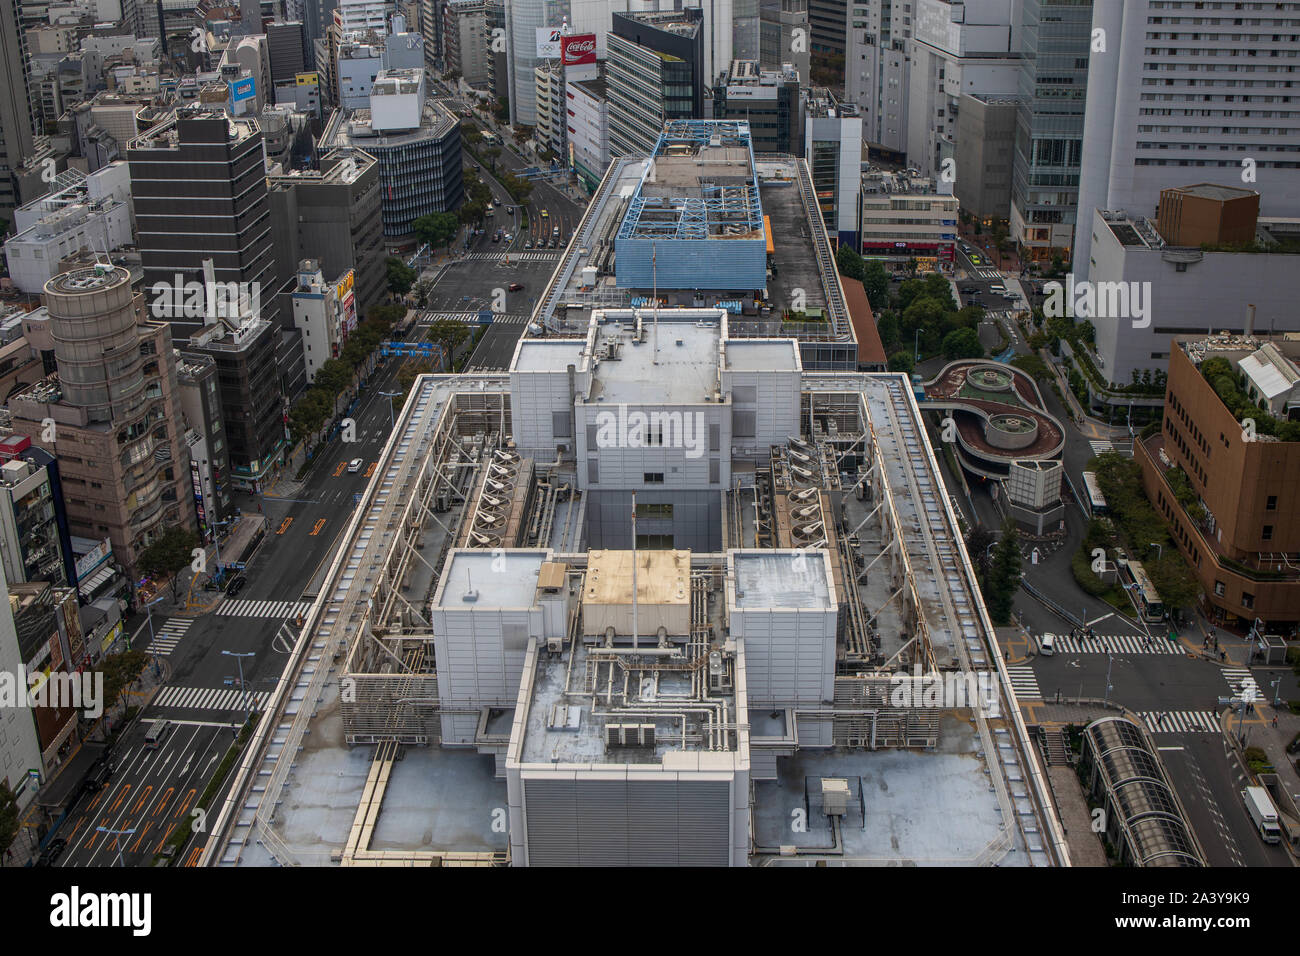 Osaka, Japon - 22 septembre 2019 : matériel de climatisation sur le toit d'un immeuble de bureaux dans le centre-ville Quartier des affaires Banque D'Images